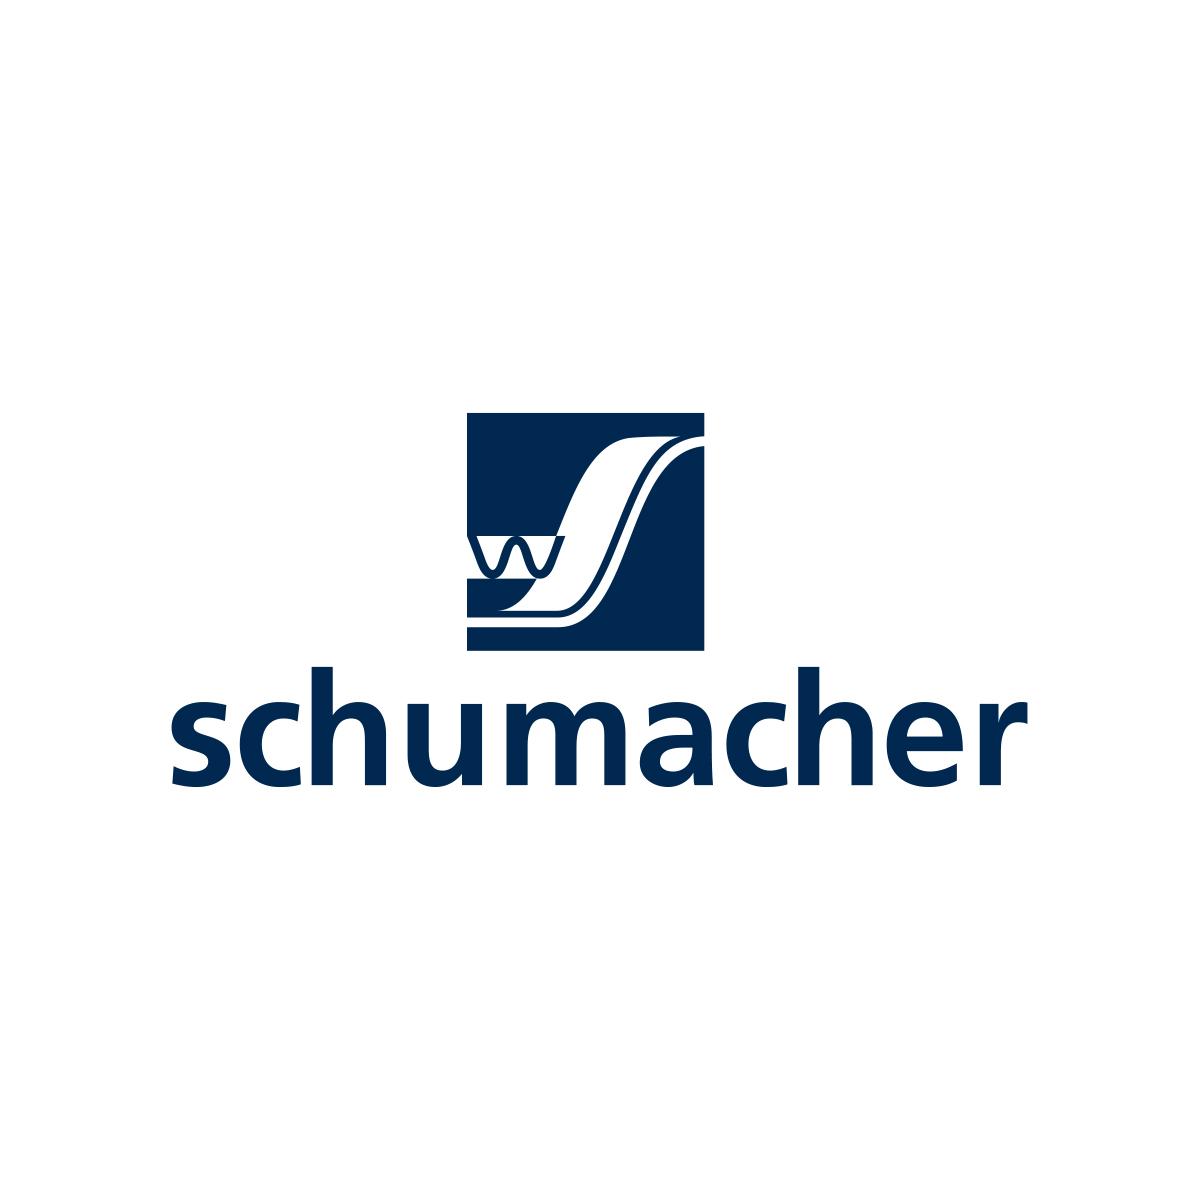 Schumacher Packaging